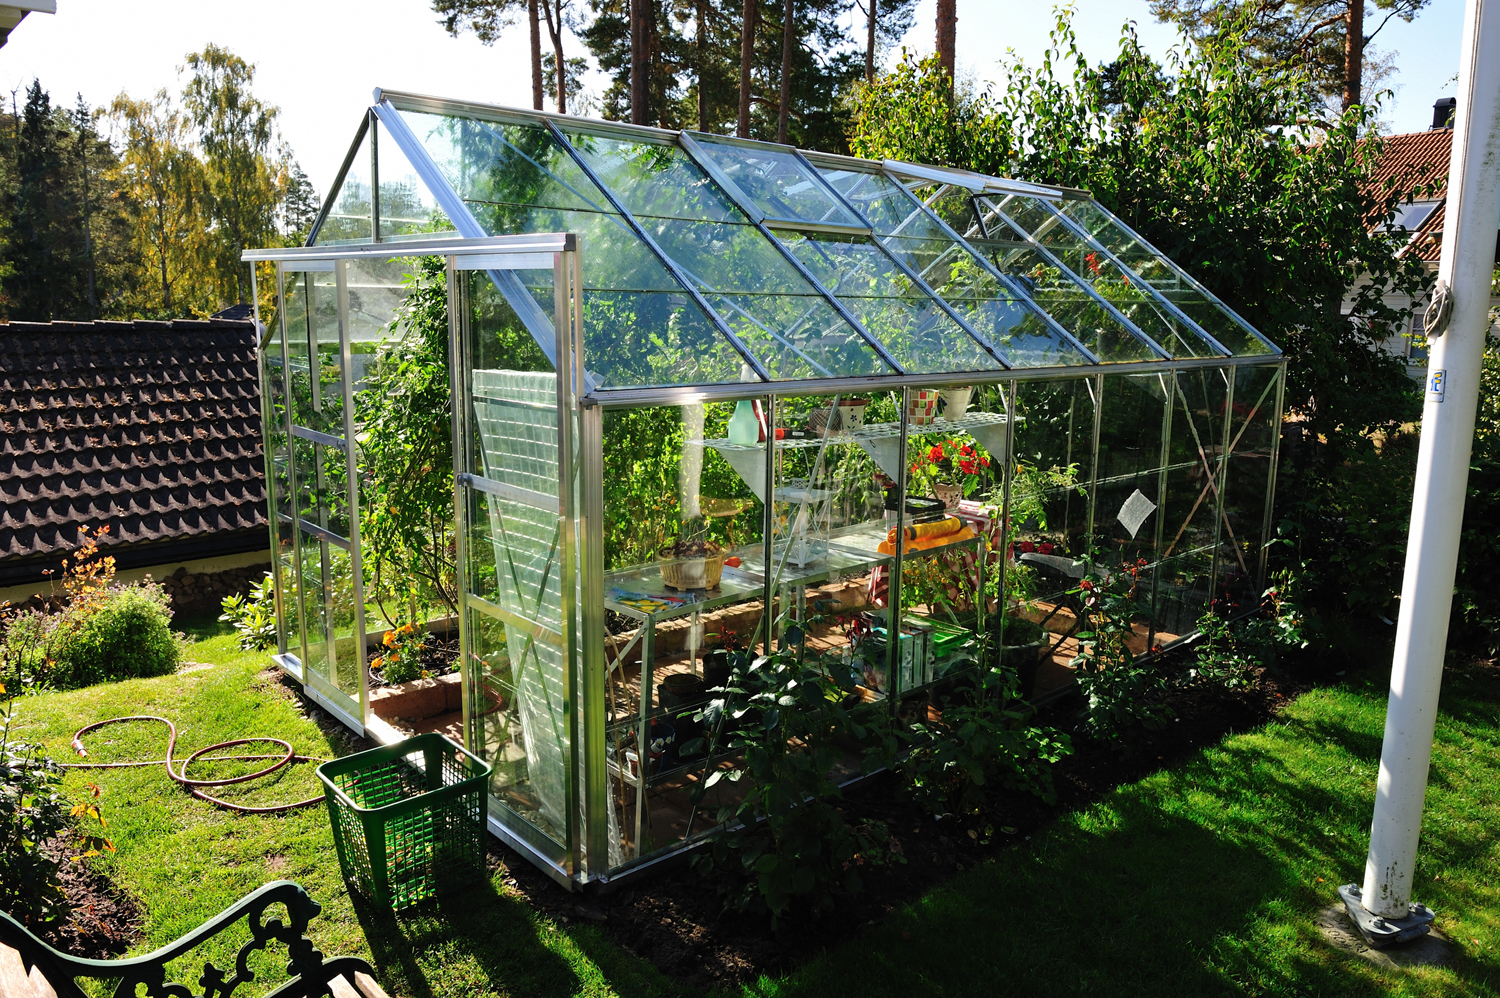 A greenhouse in a backyard